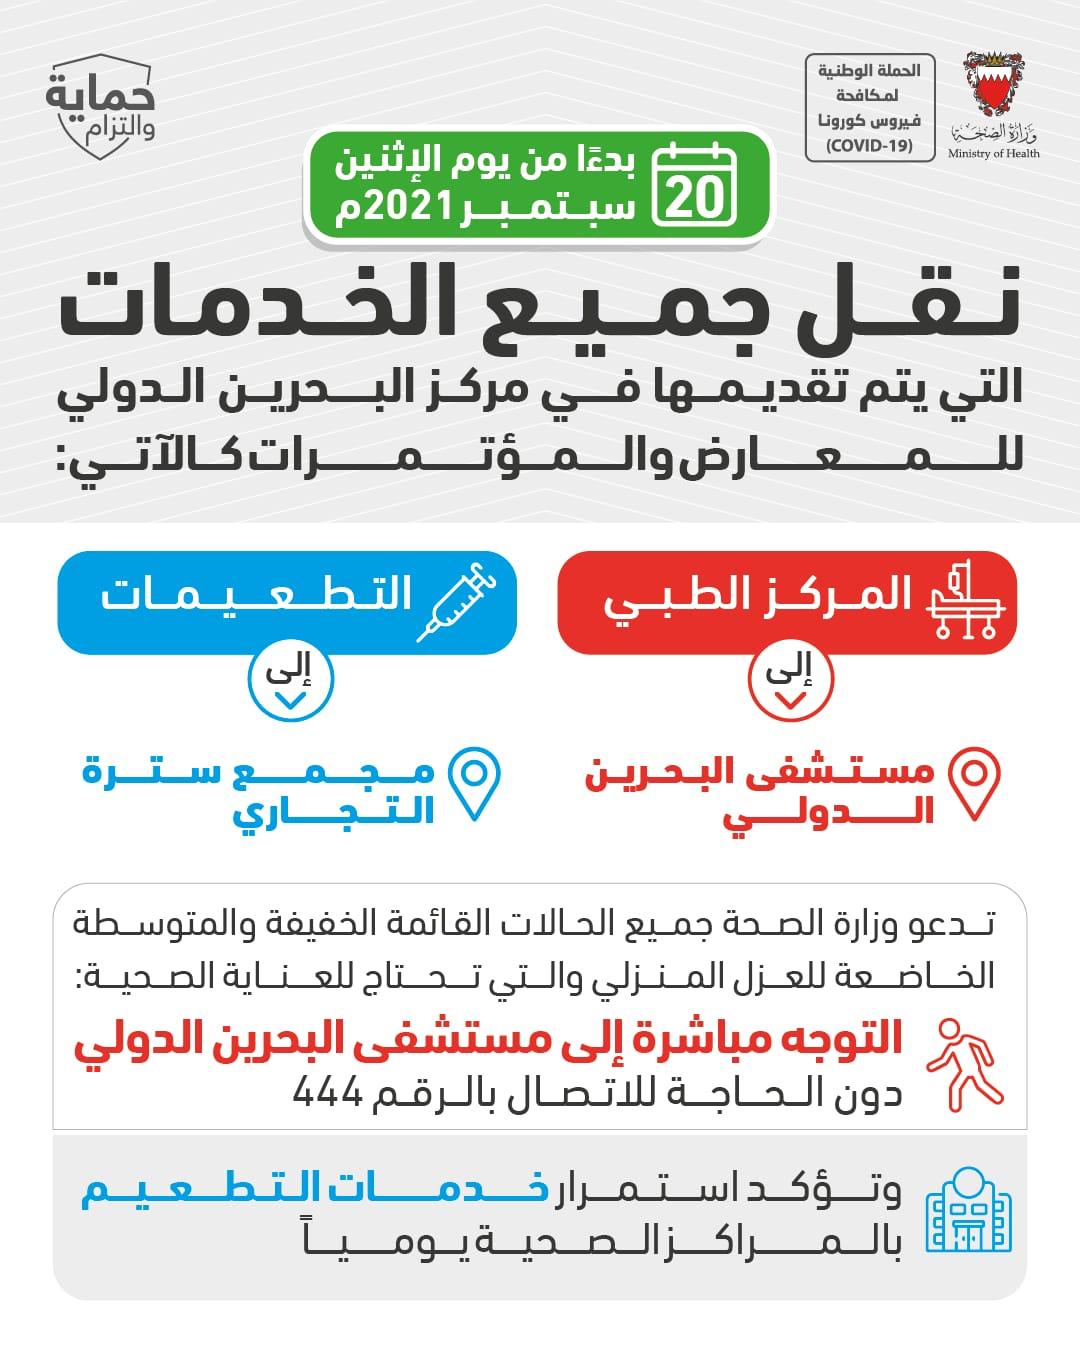 الصحة: نقل جميع الخدمات التي يتم تقديمها في مركز البحرين الدولي للمعارض والمؤتمرات إلى مستشفى البحرين الدولي ومجمع سترة بدءاً من يوم الاثنين 20 سبتمبر 2021م